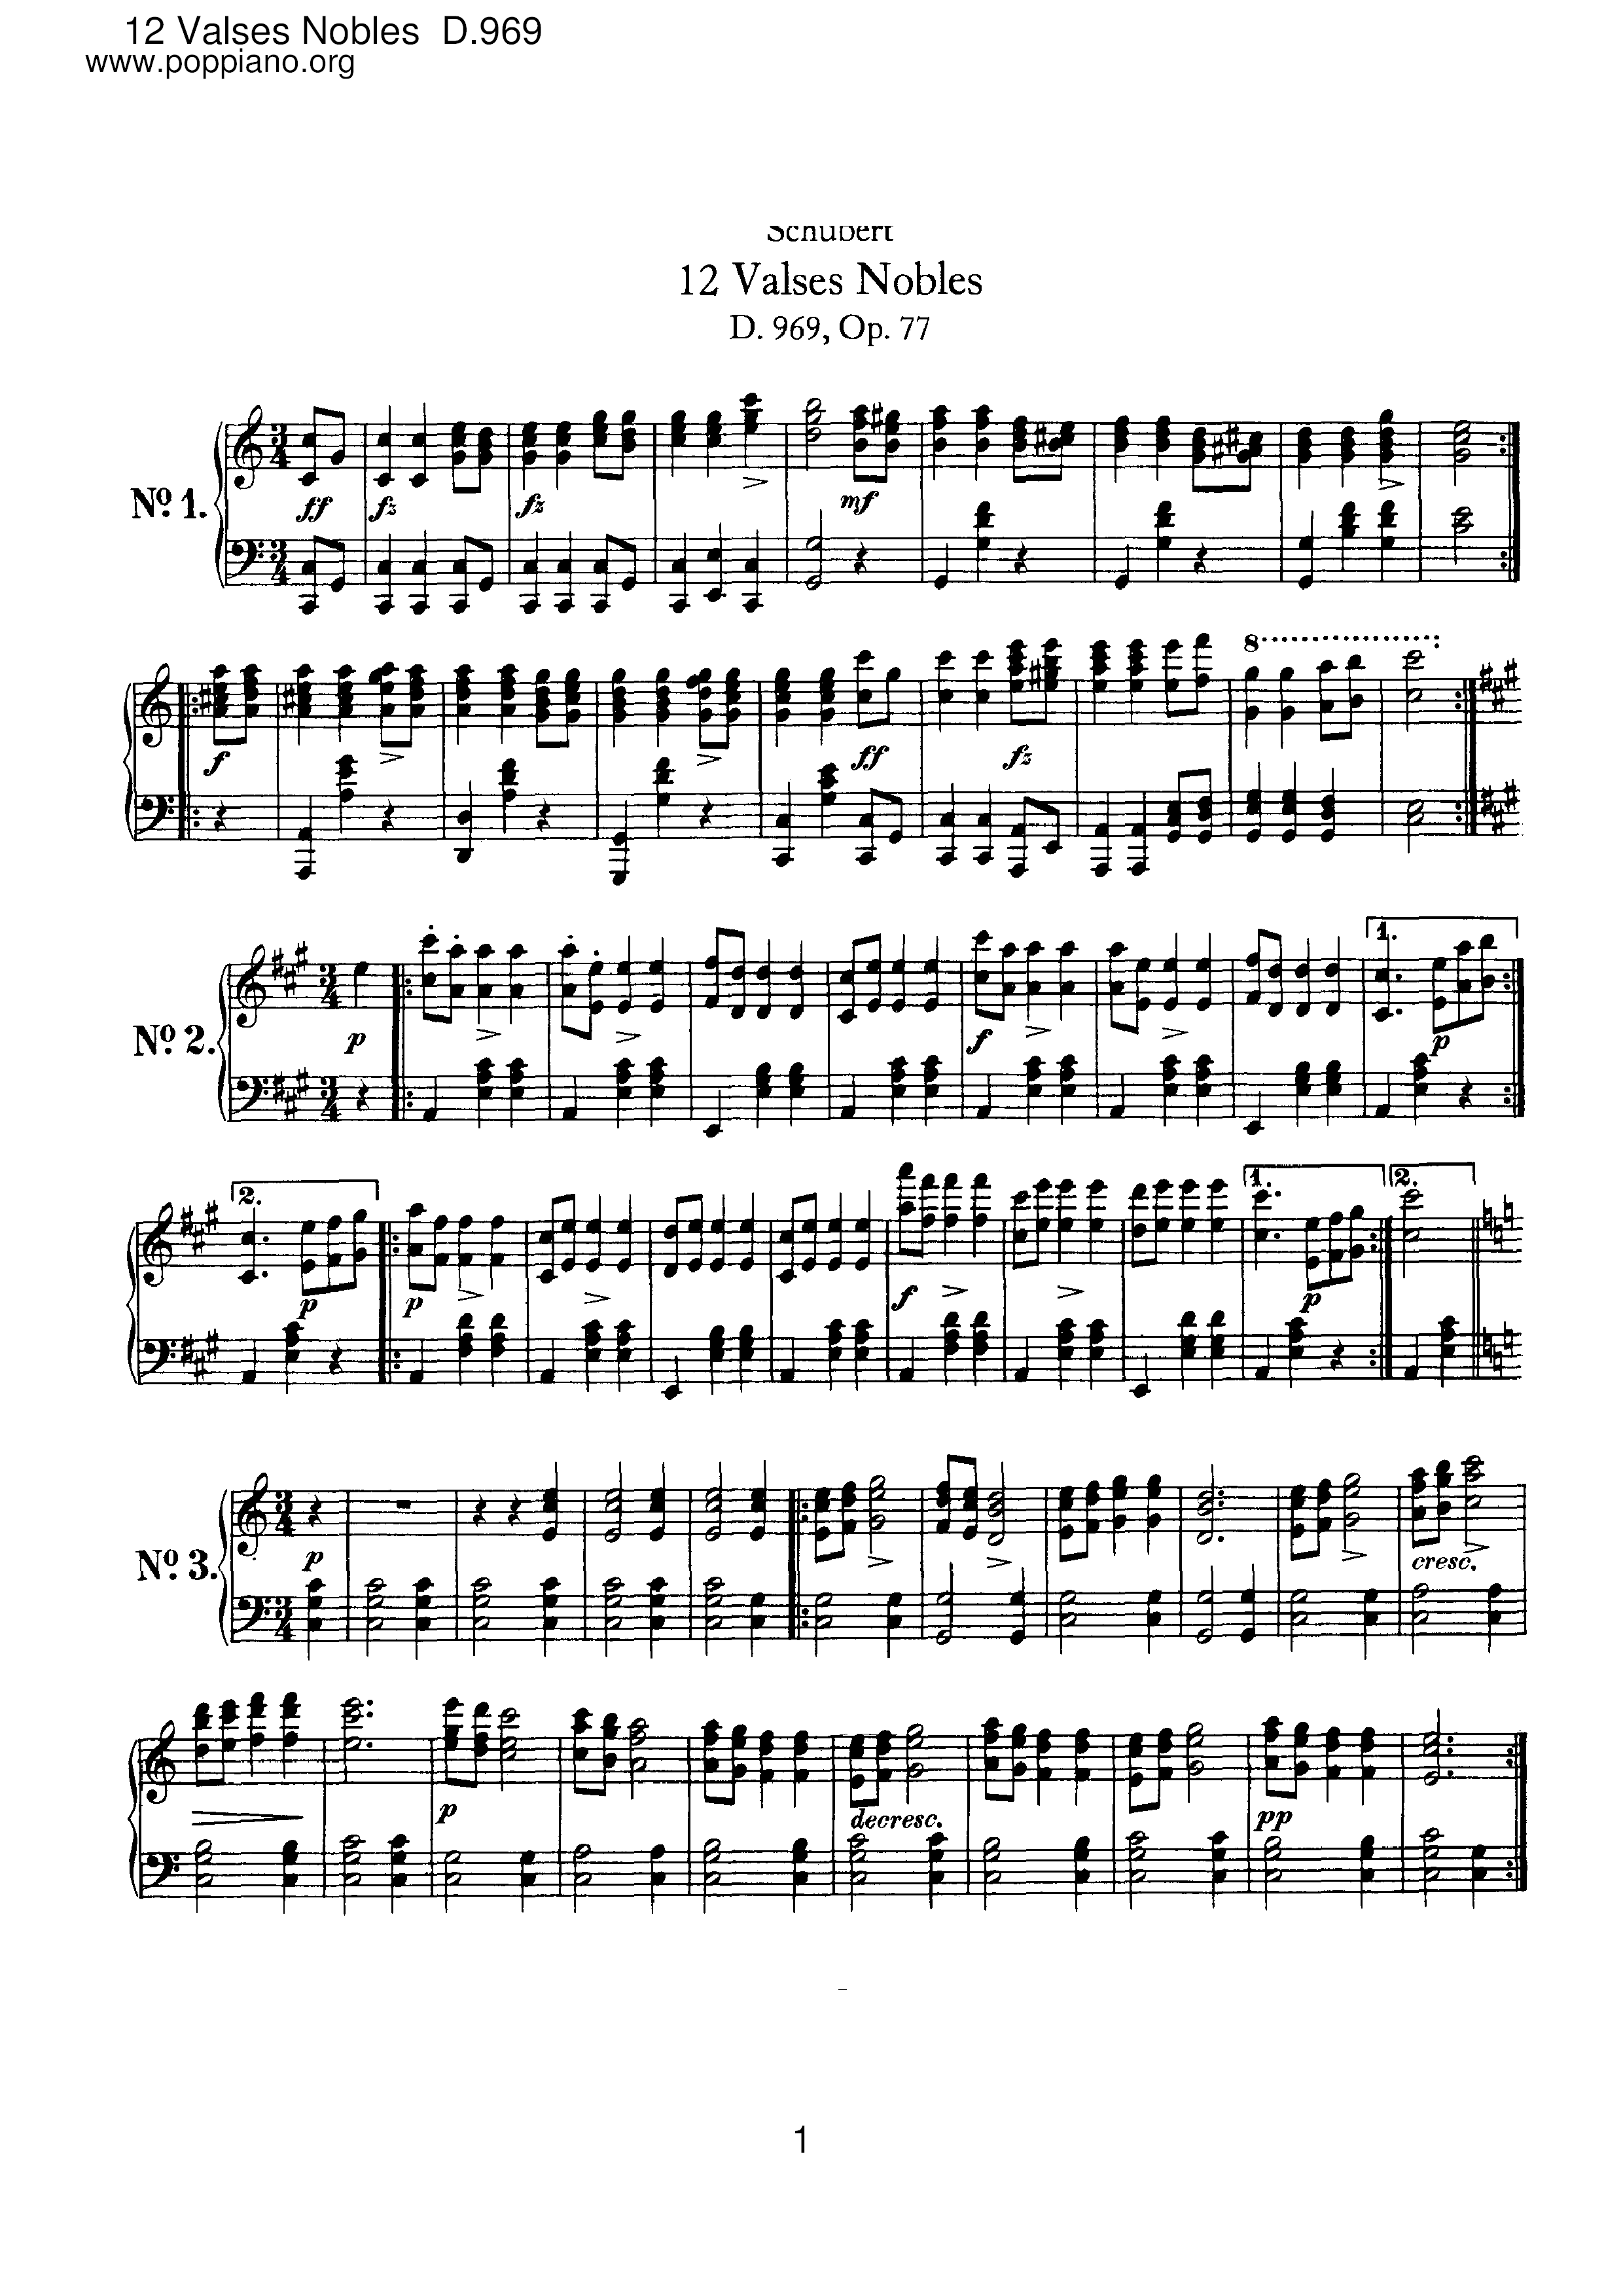 12 Valses Nobles, D.969ピアノ譜